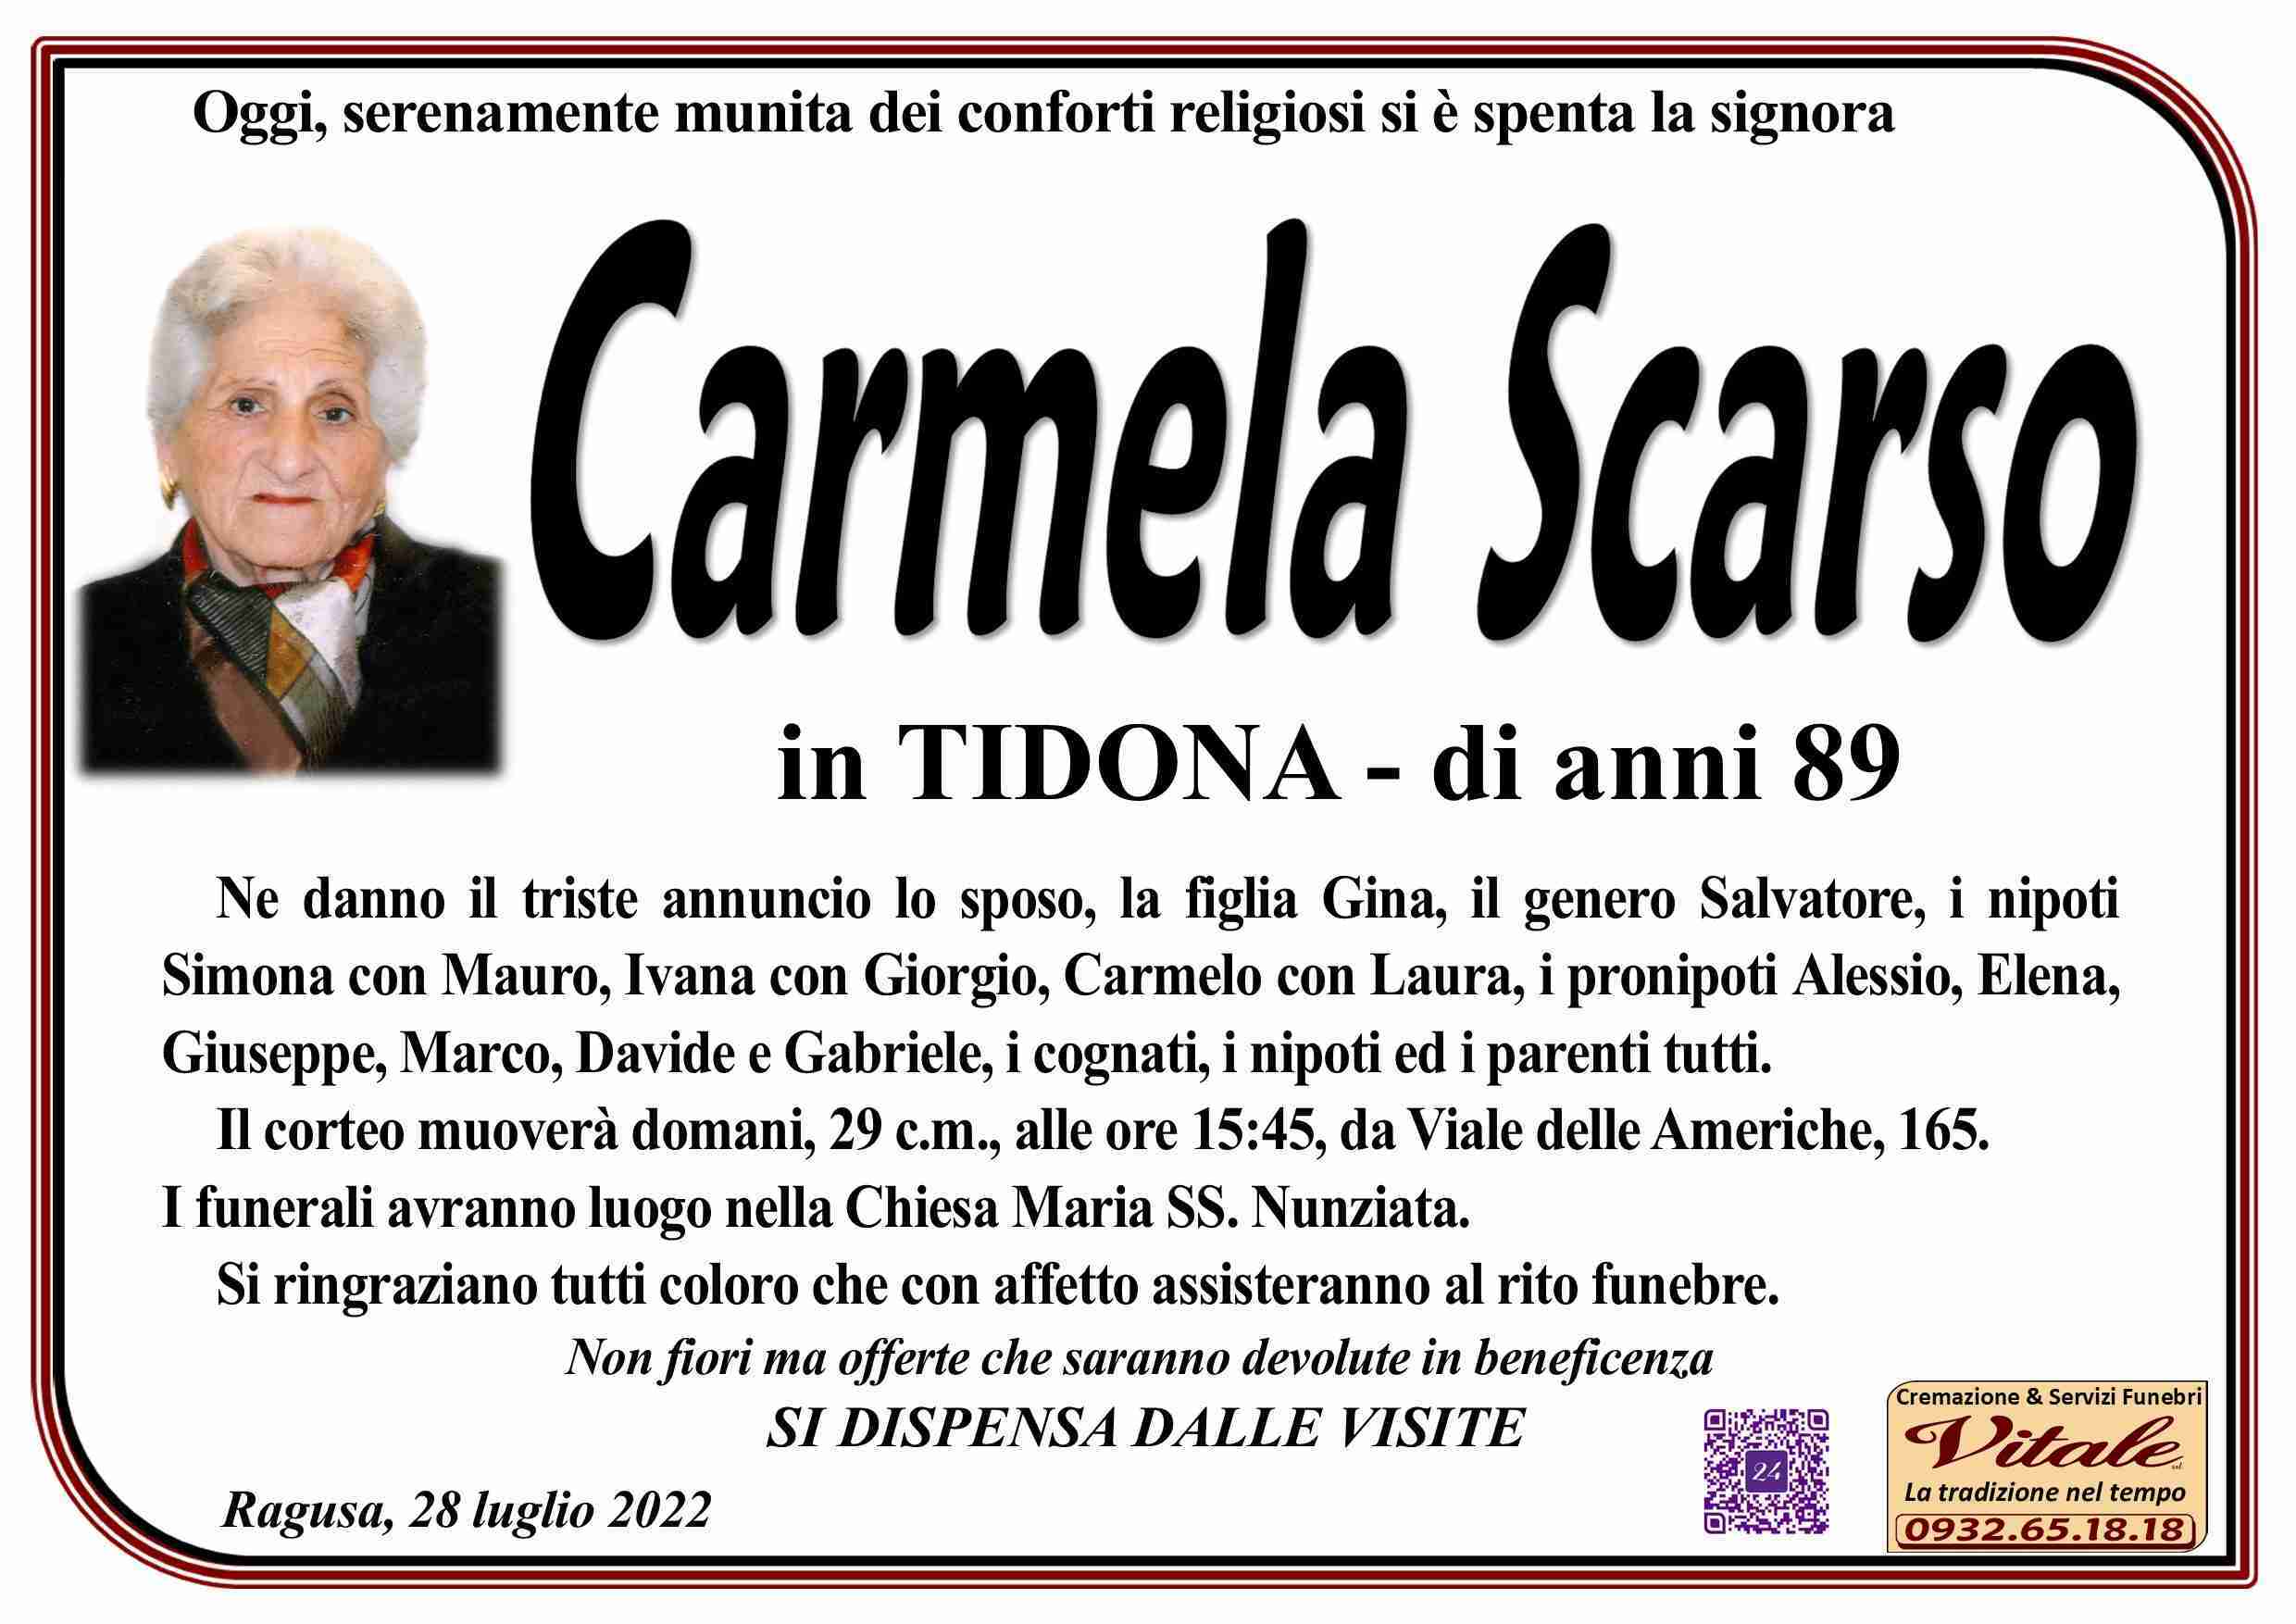 Carmela Scarso